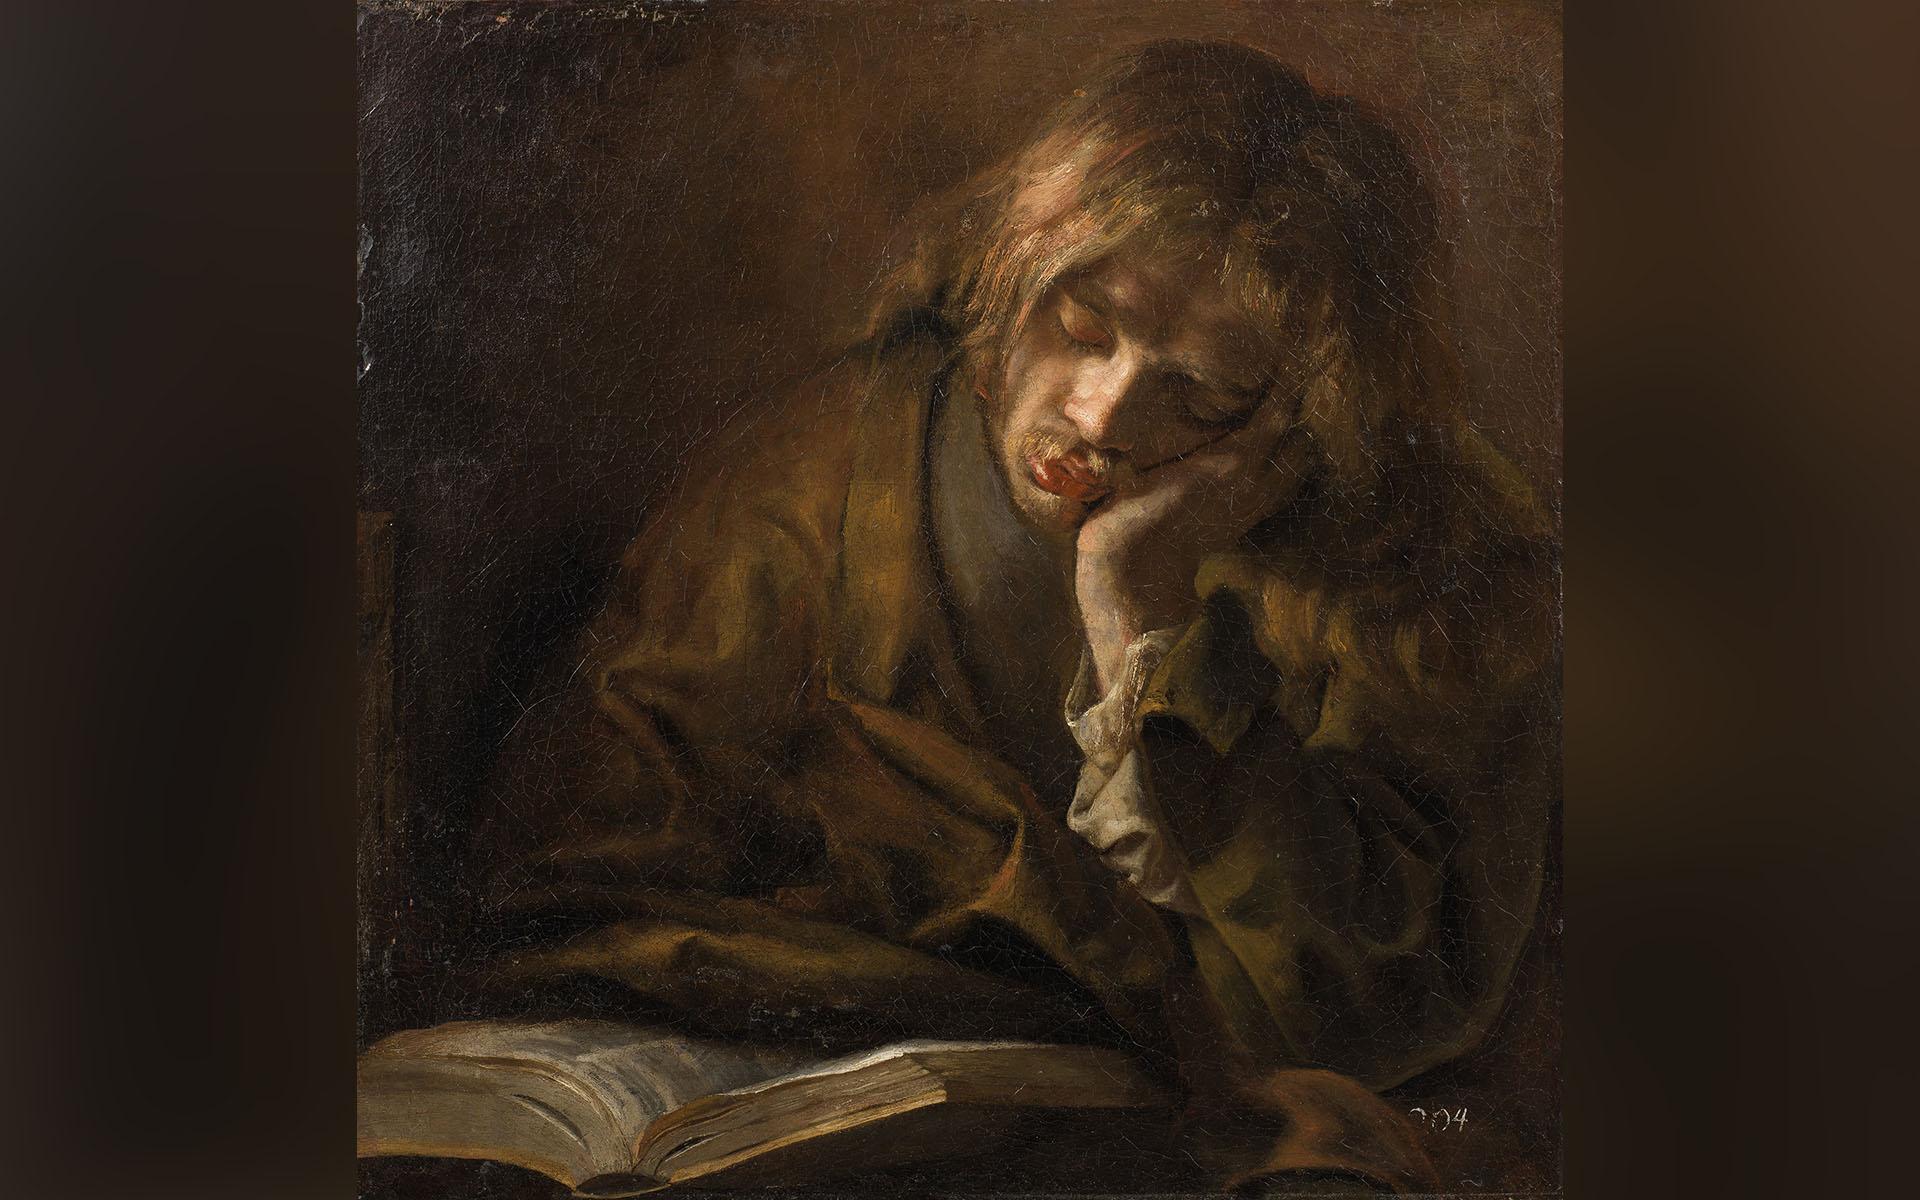 Målningen ”Sovande ung man sittande framför en uppslagen bok” utfördes av en okänd konstnär i Rembrandts ateljé på 1600-talet. Nu finns den i samlingarna på Nationalmuseum. Foto: Anna Danielsson/Nationalmuseum